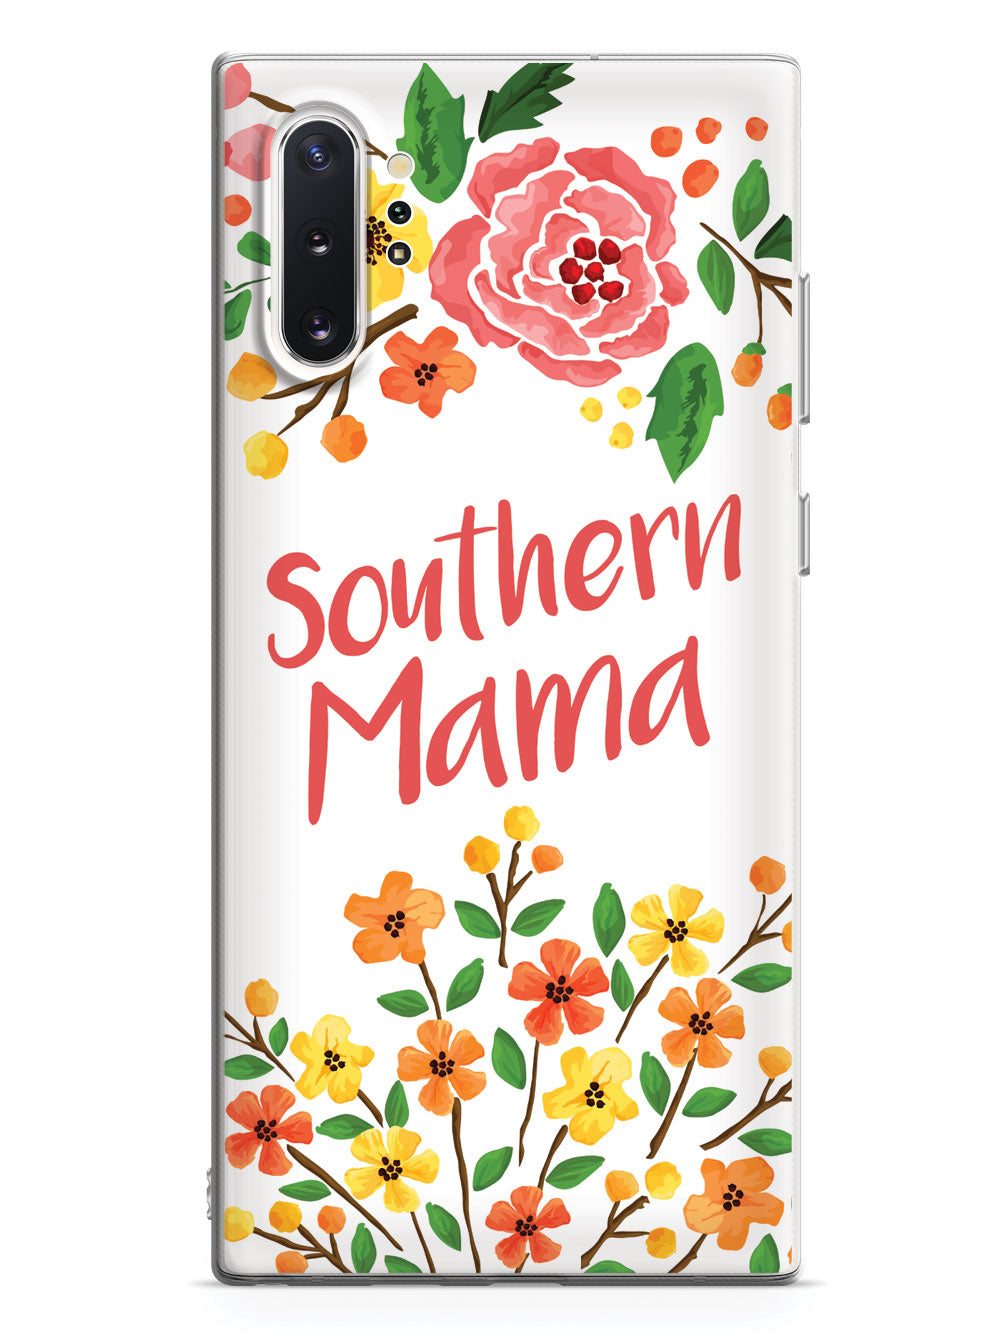 Southern Mama Case